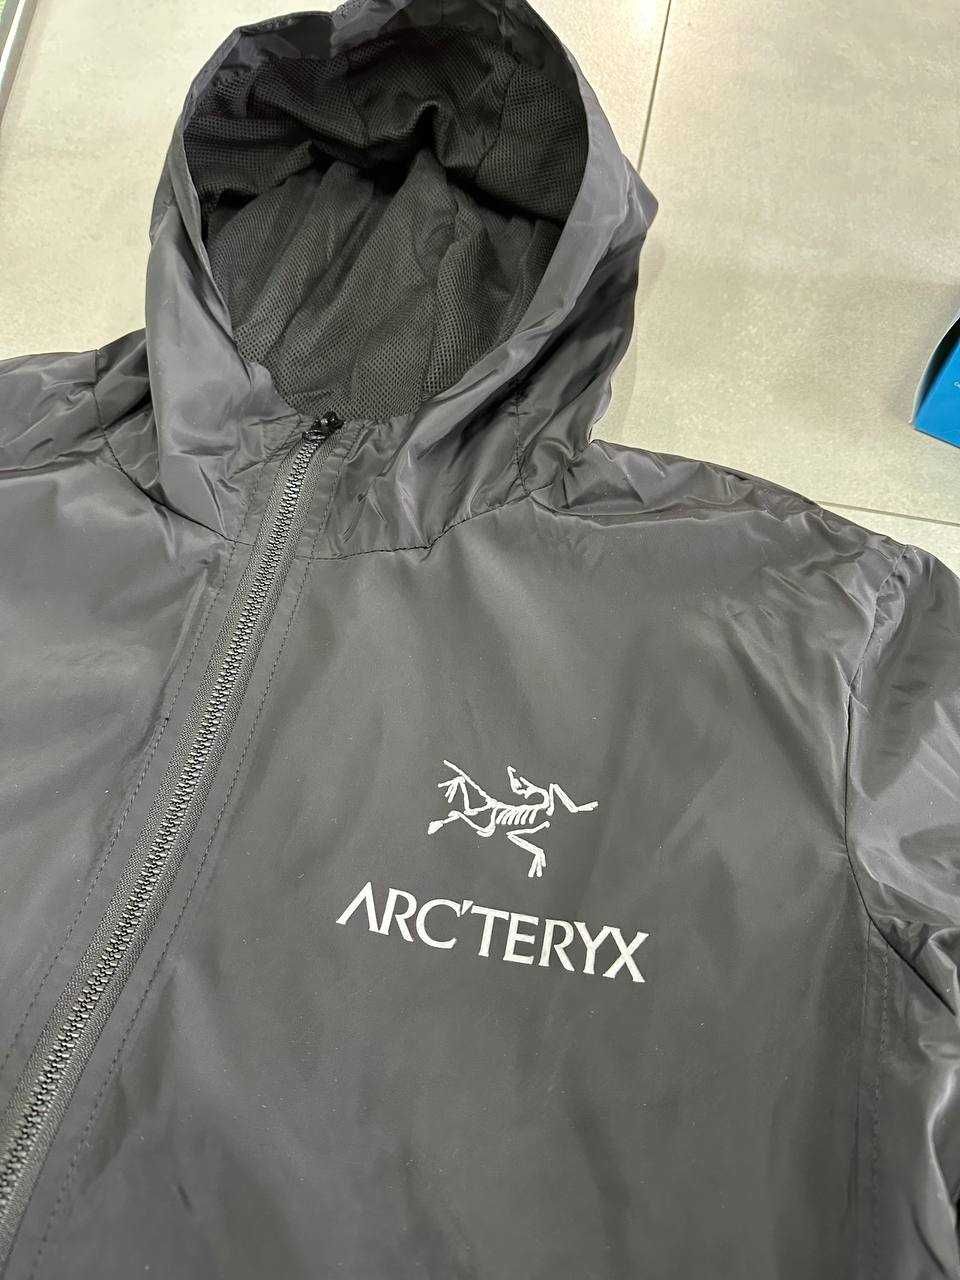 Якісна нова куртка Артерікс на гортексі / Arcteryx Gore-Tex / XS S M L